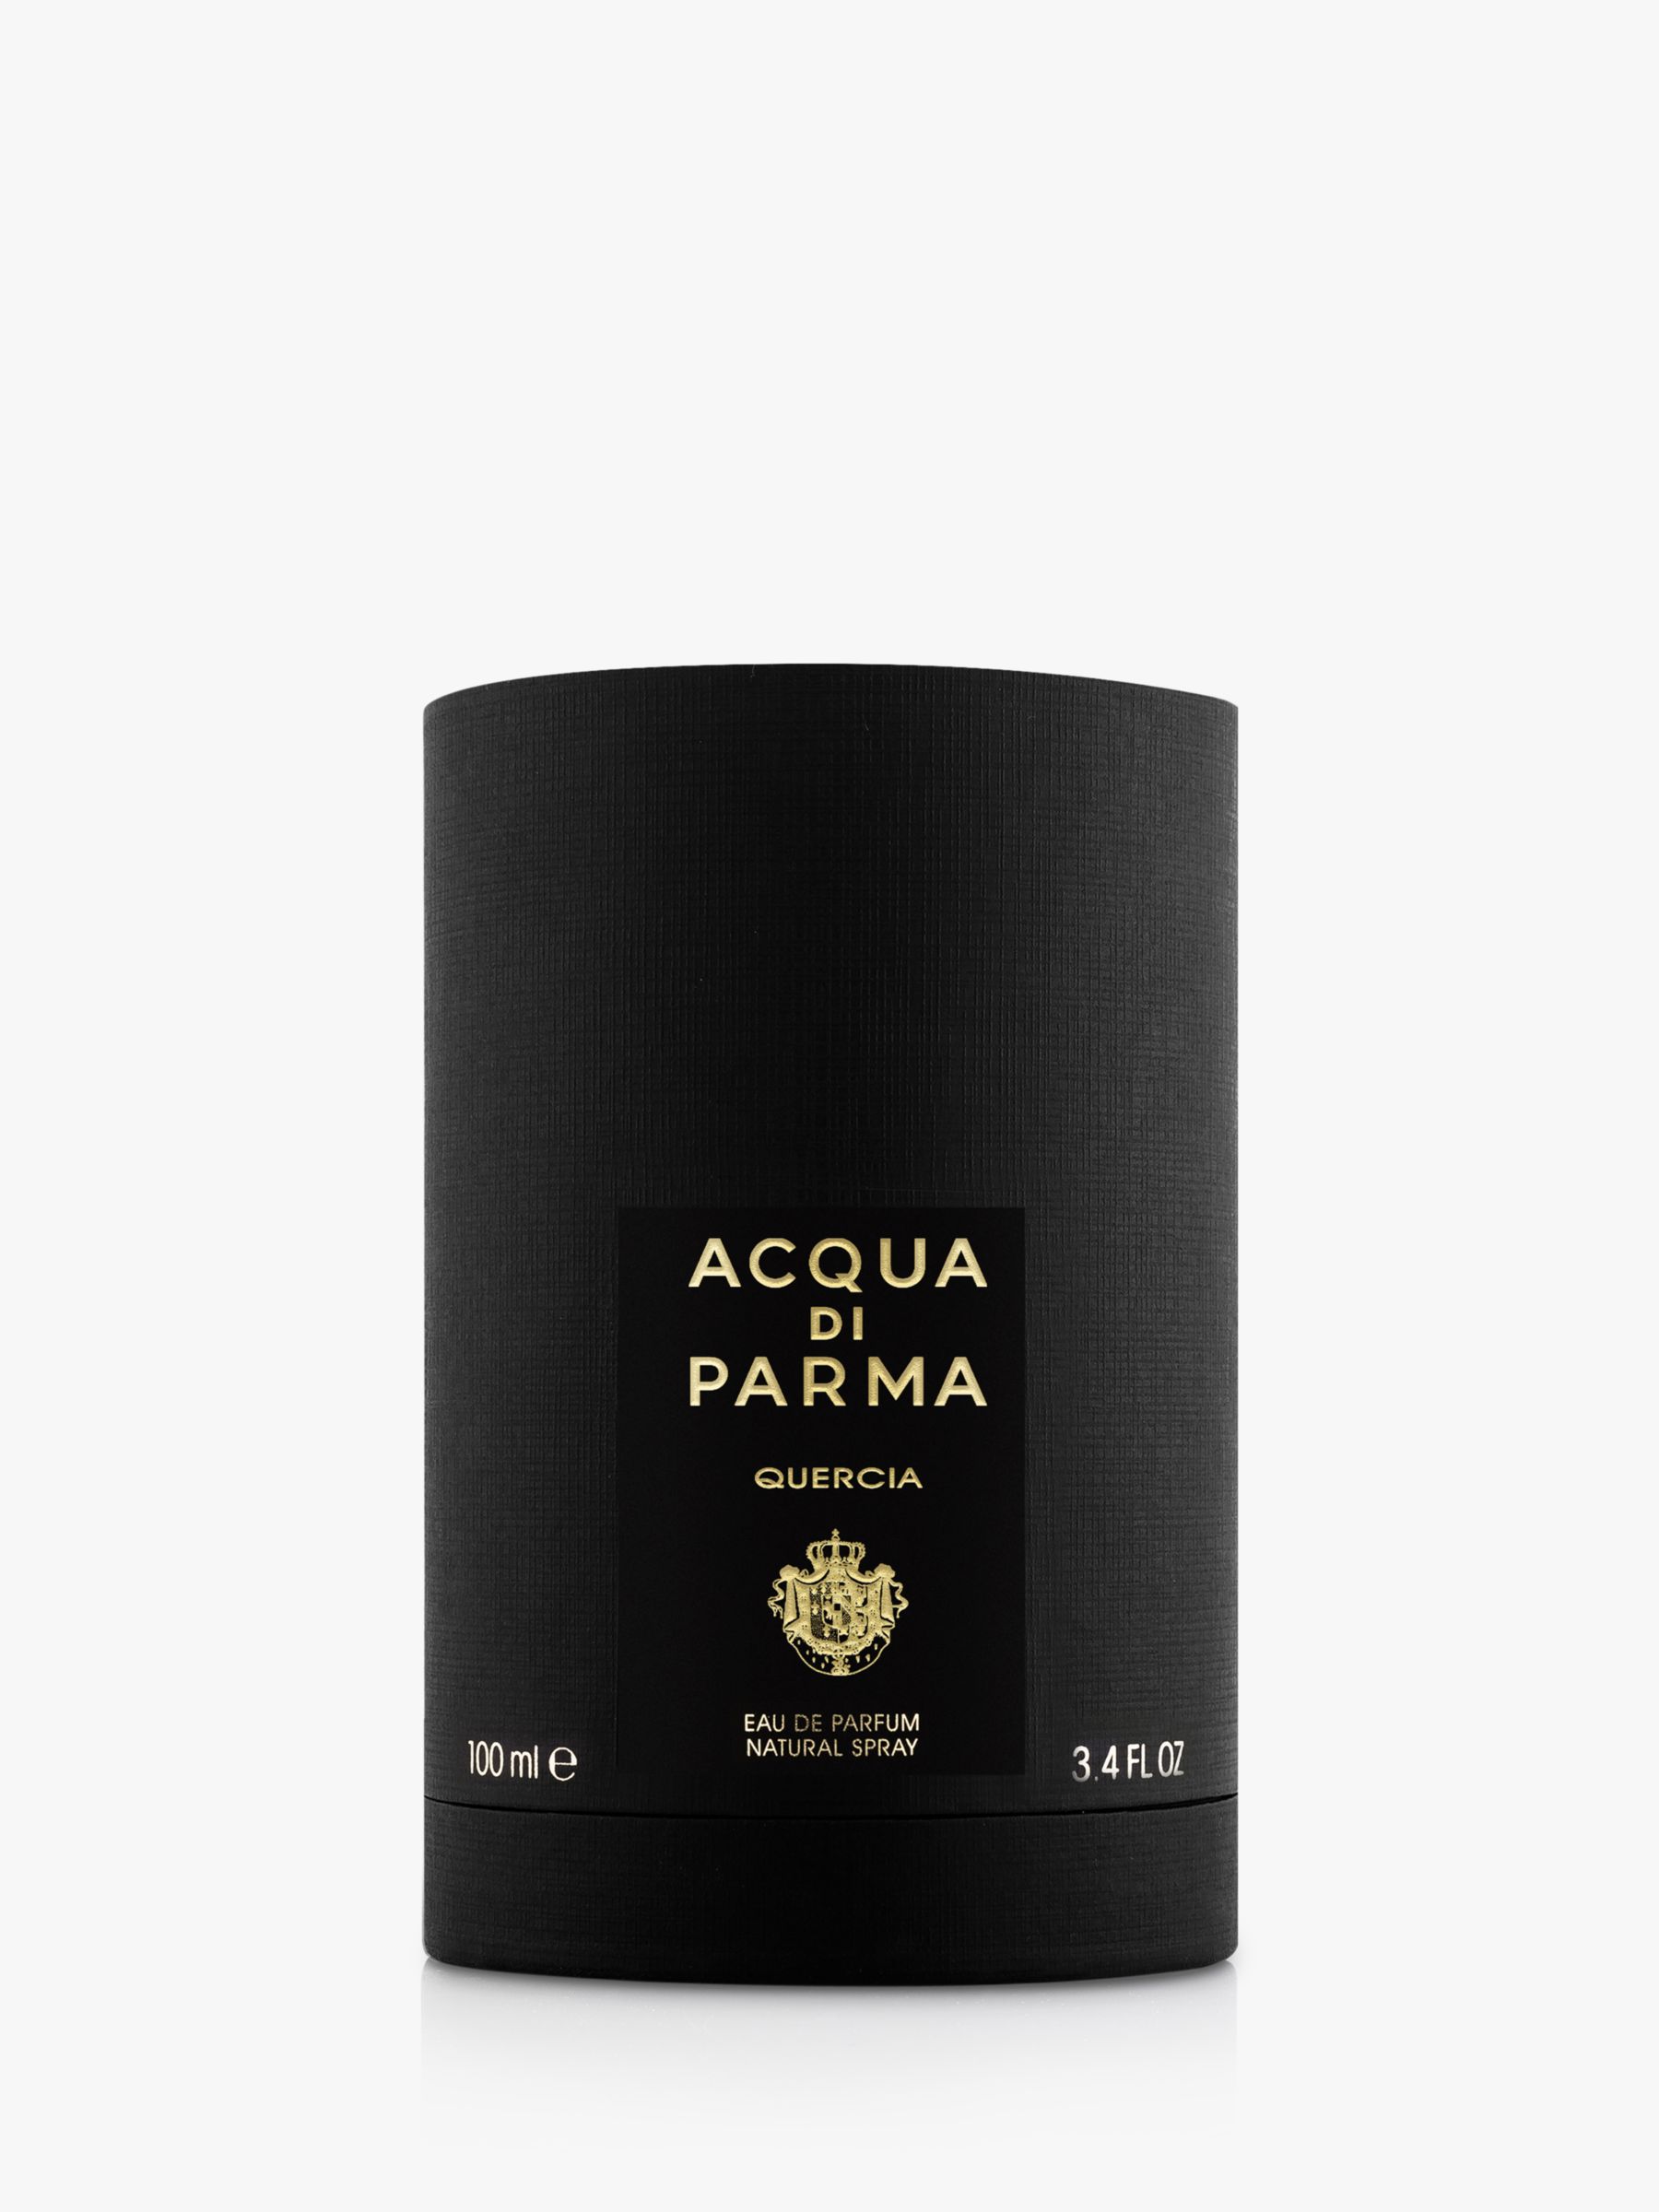 Acqua Di Parma Quercia Eau De Parfum 100ml Spray